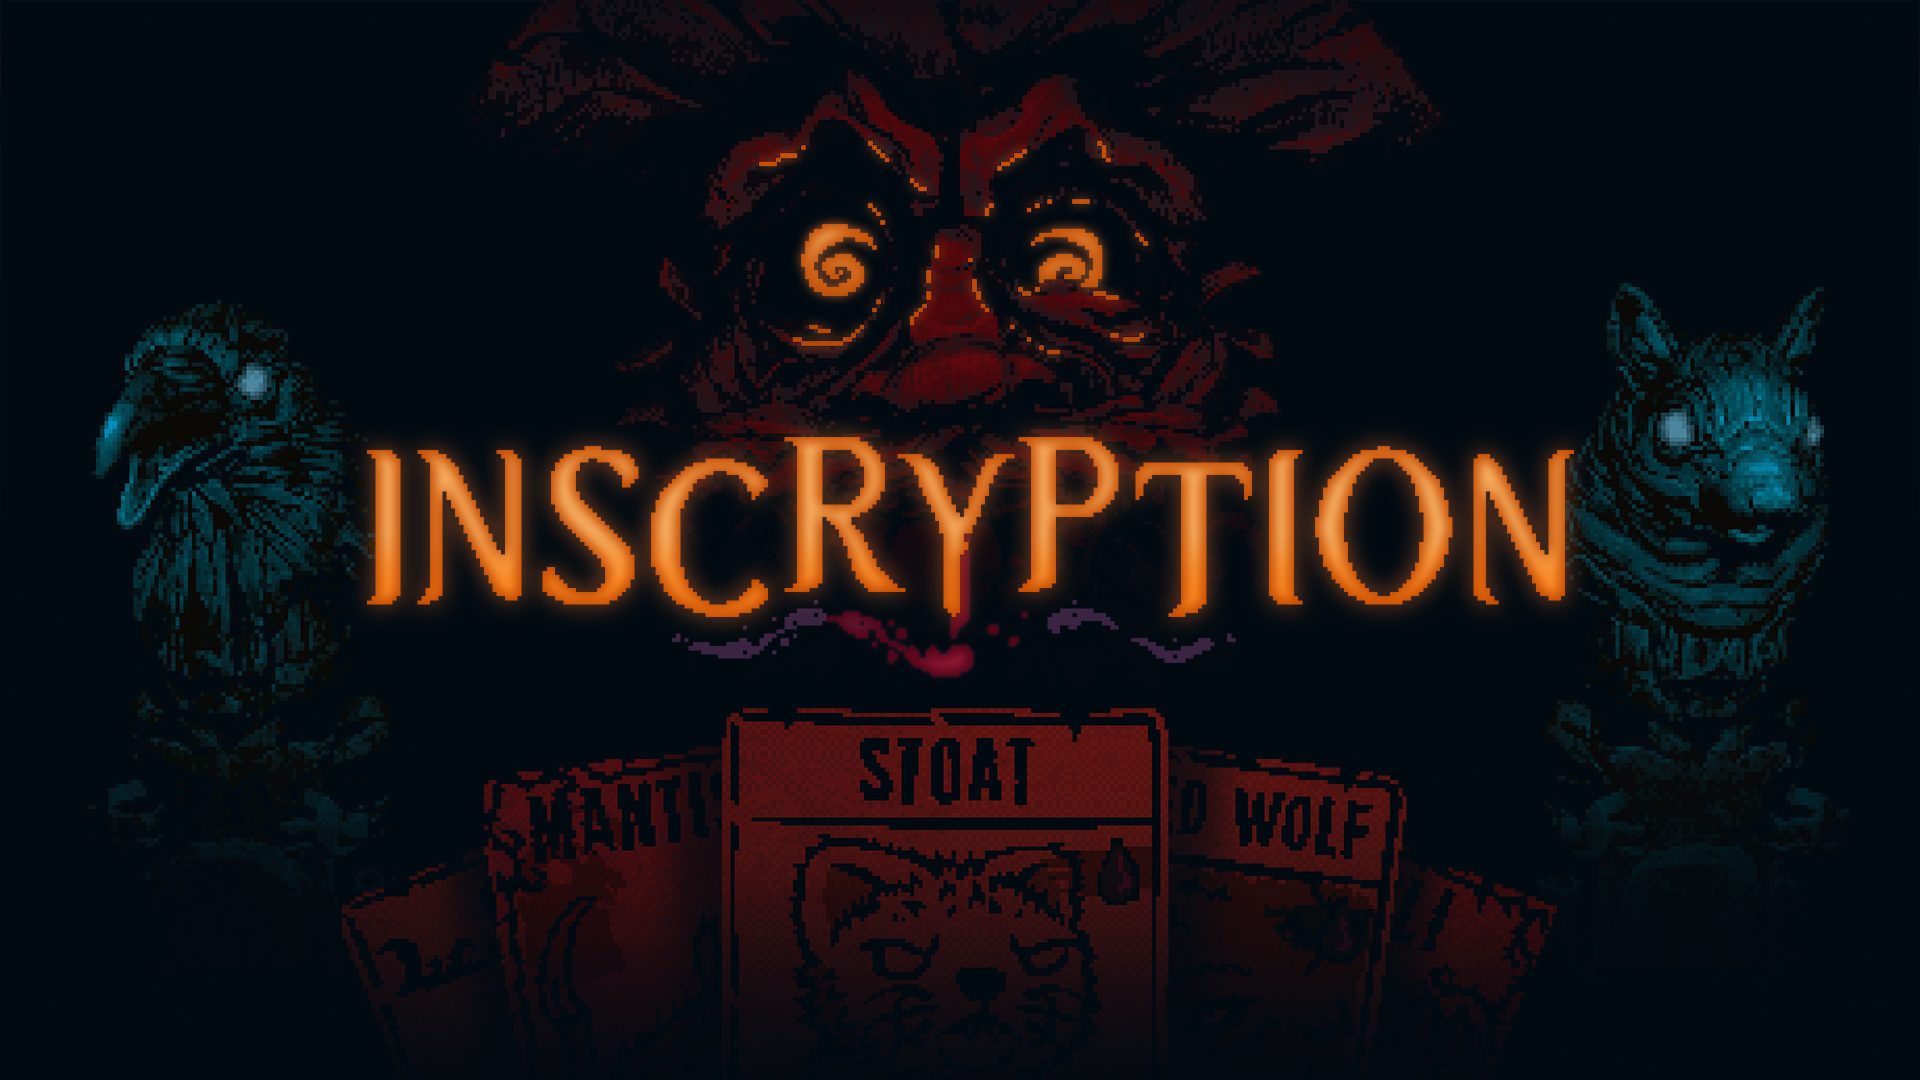 L’horreur psychologique s’intensifie dans Inscryption, un jeu de construction de deck diabolique